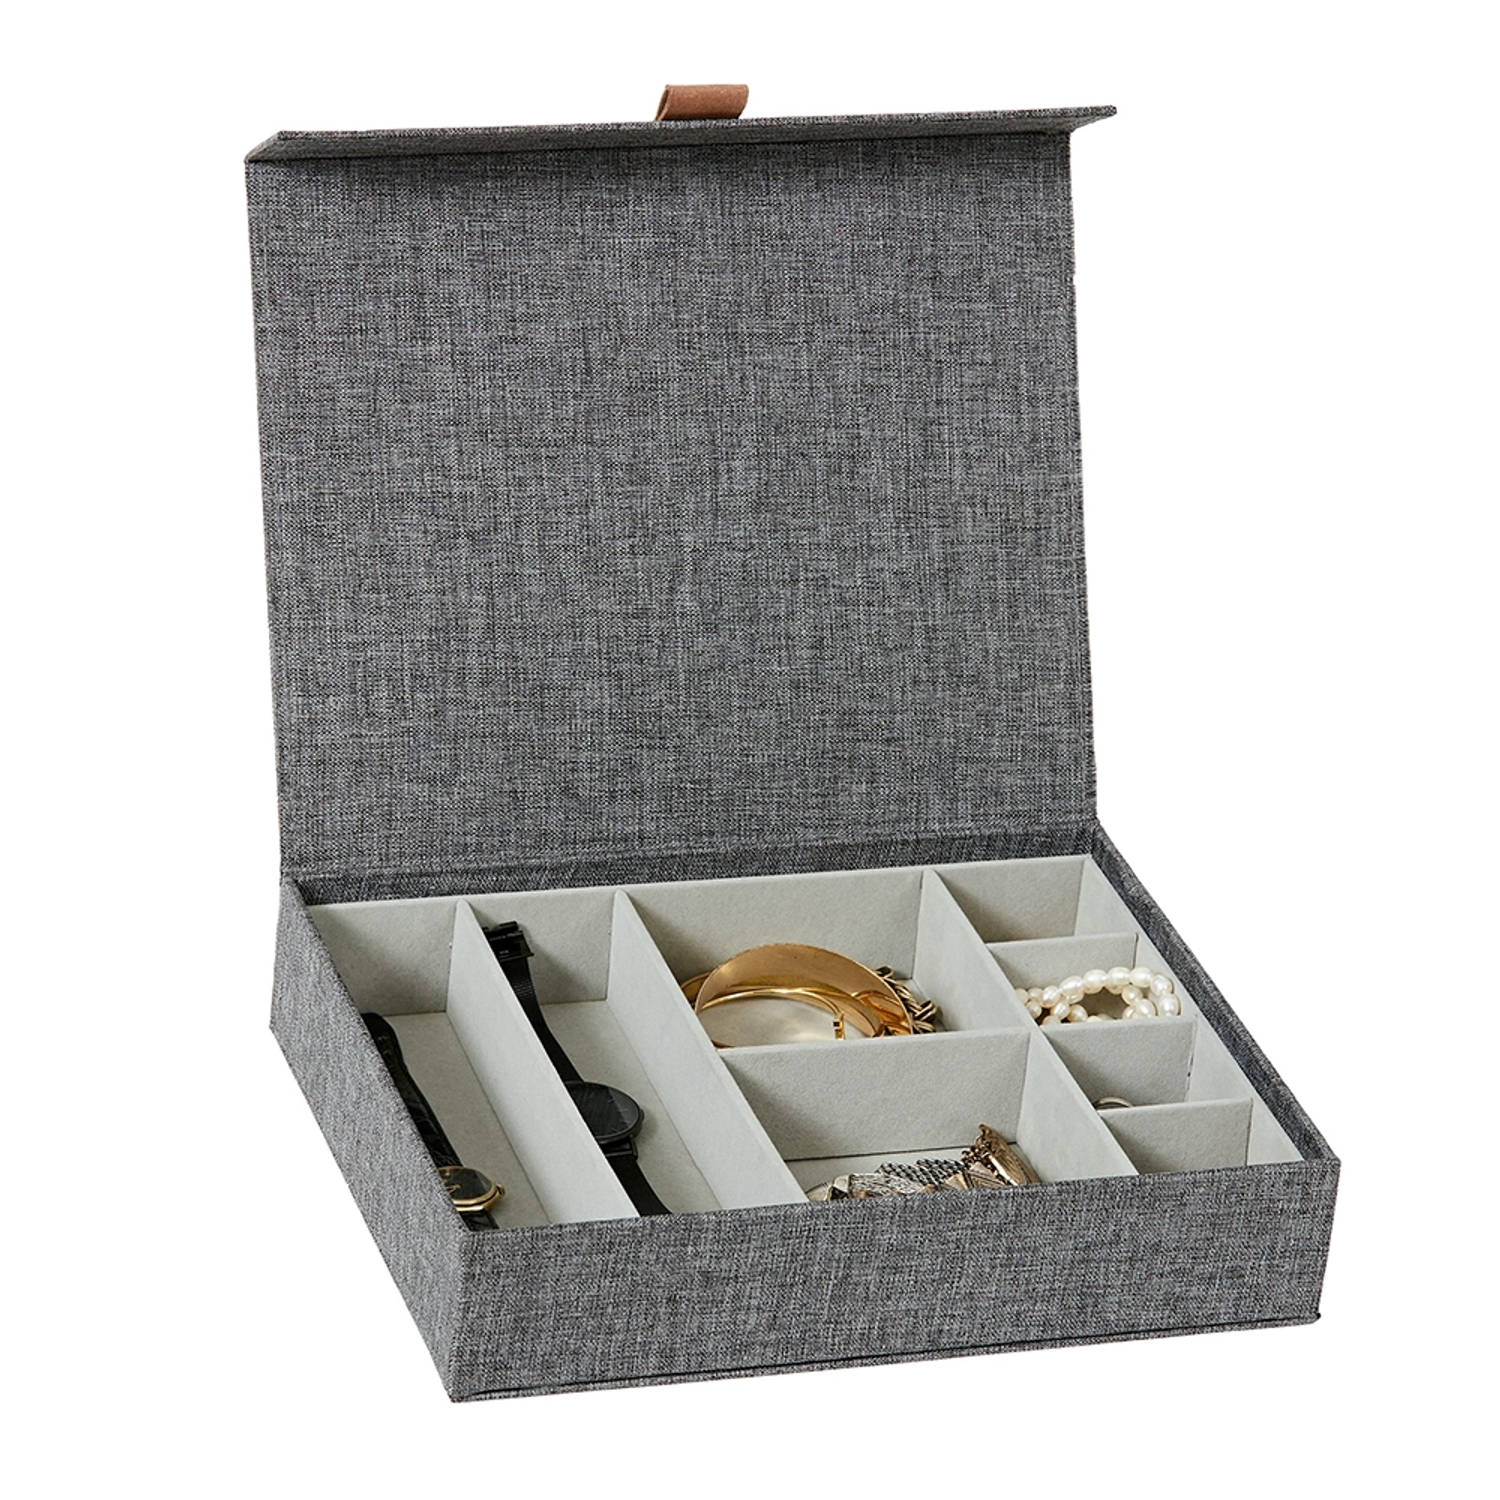 Love it Store it Premium opbergdoos voor sieraden - juwelenkistje van hoogwaardige stof, binnenkant fluweel - met 8 vakken - grijs